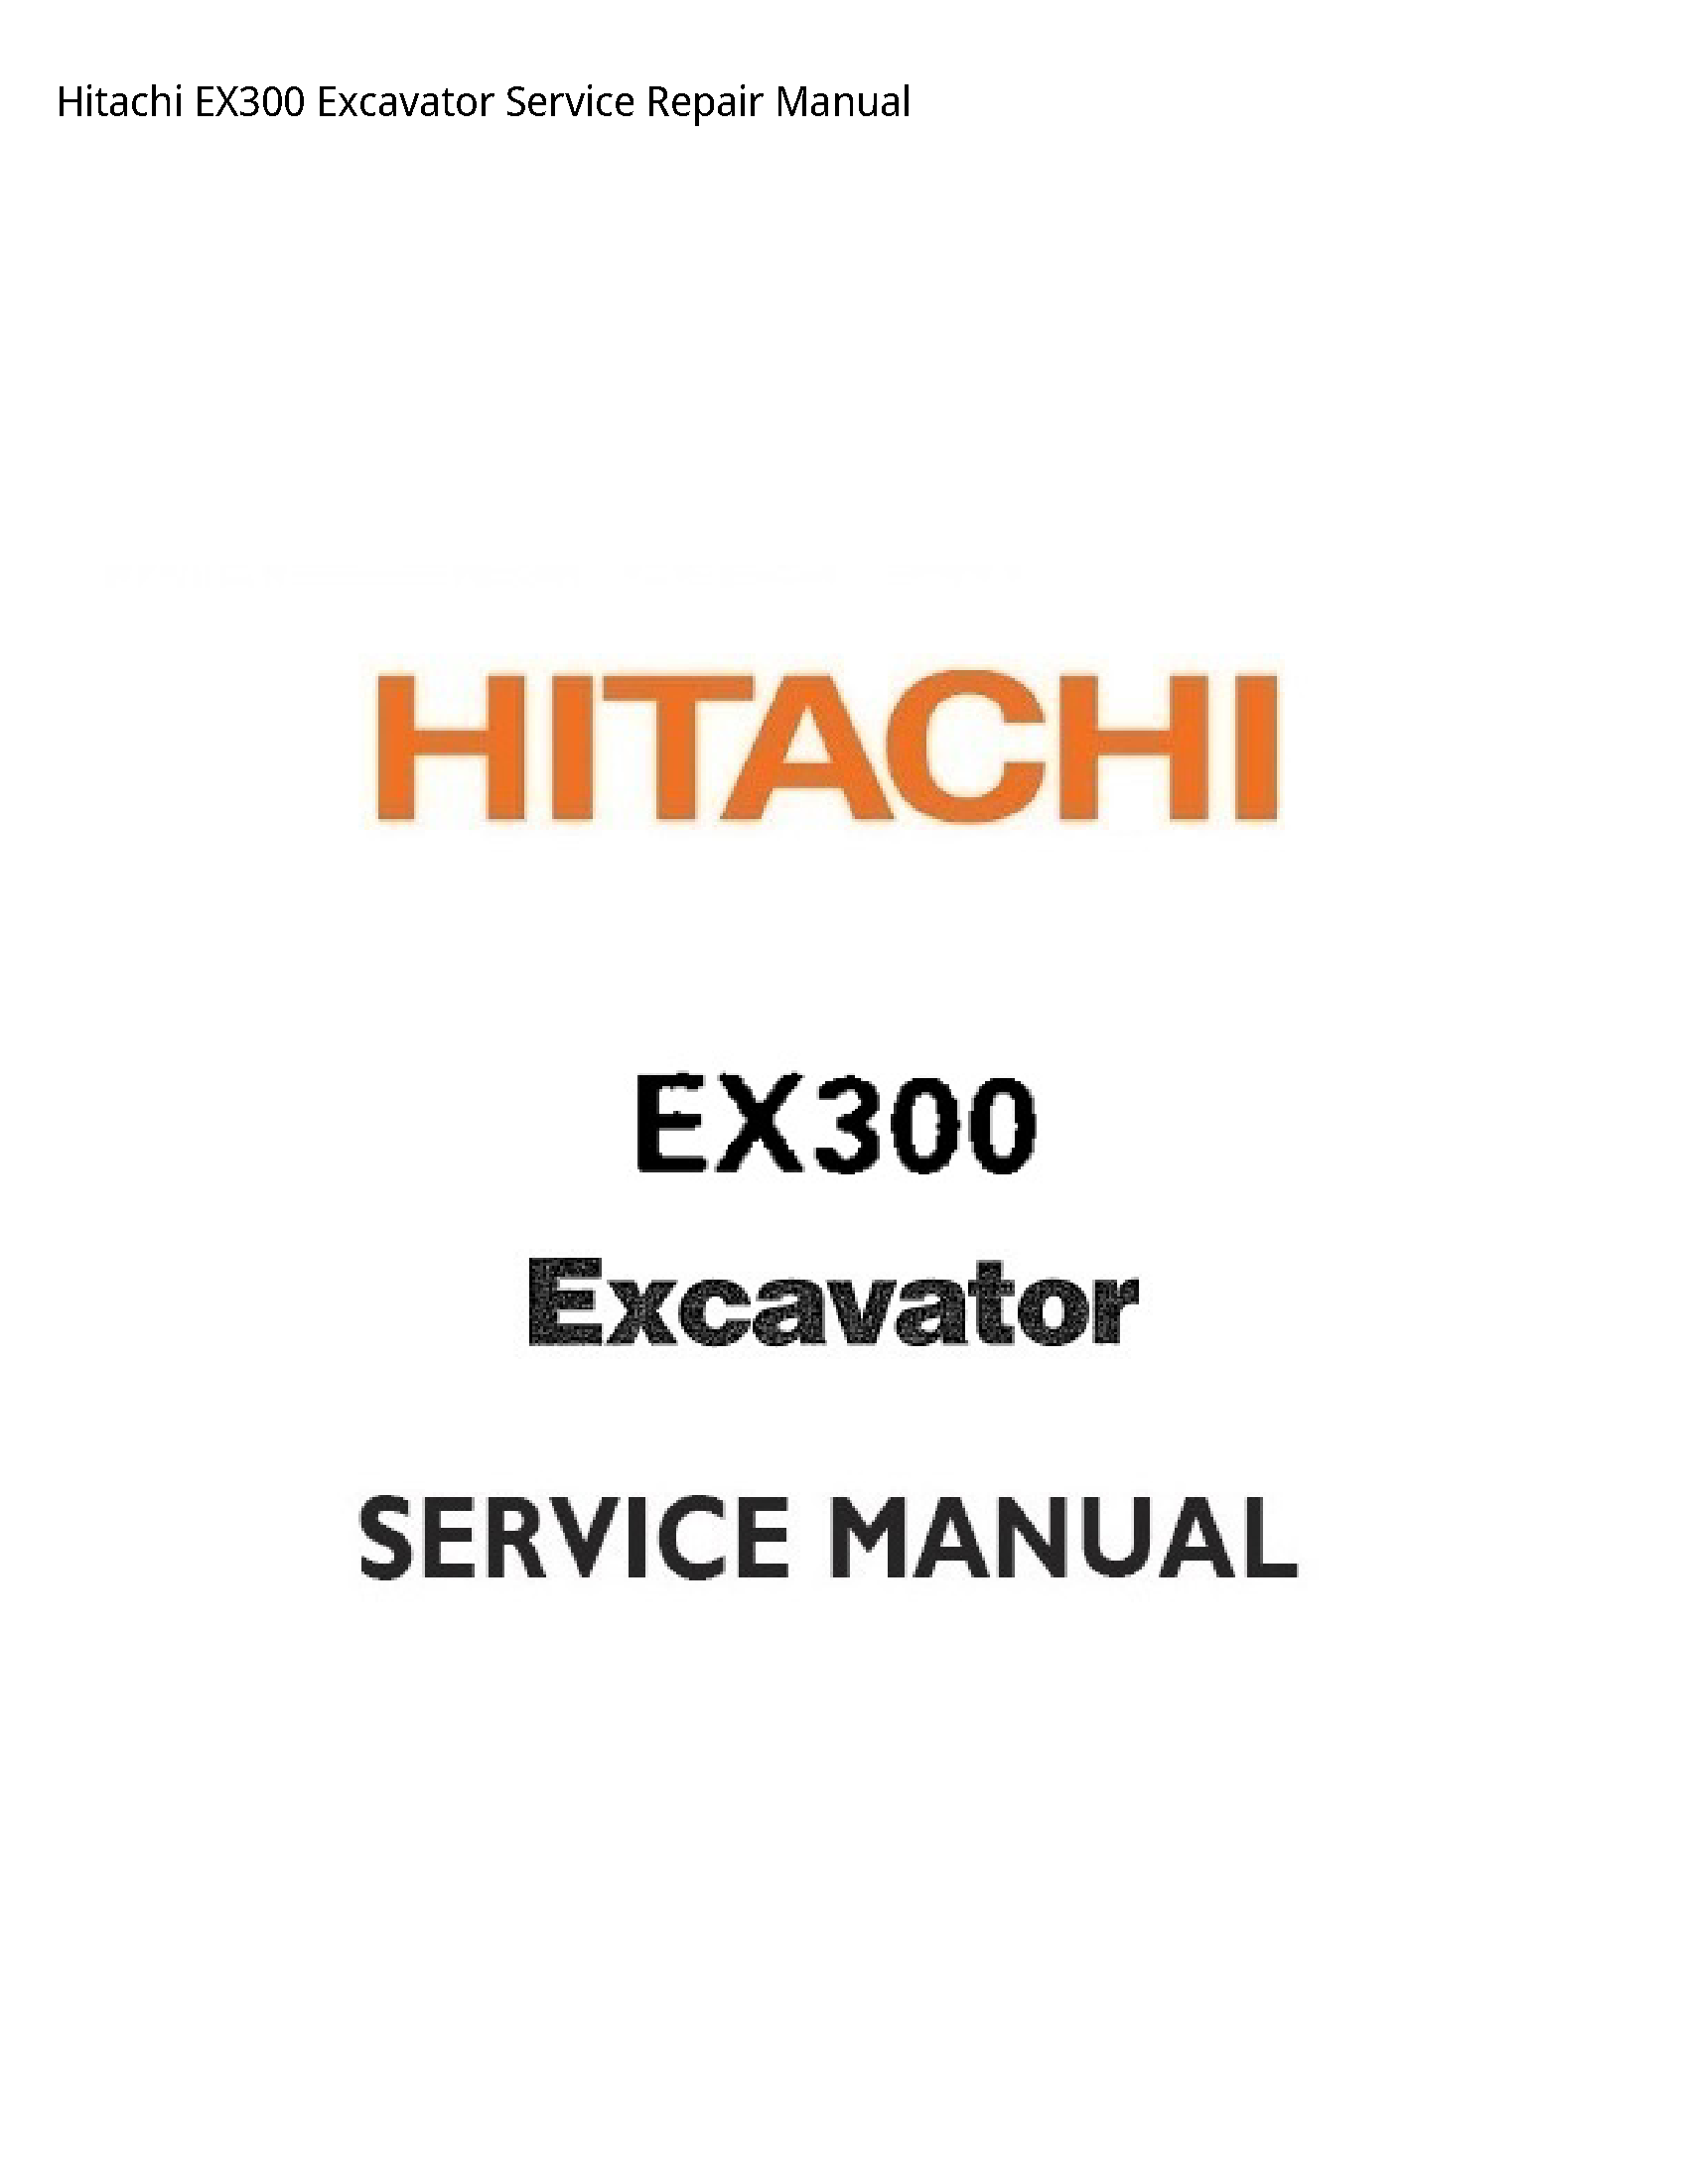 Hitachi EX300 Excavator manual